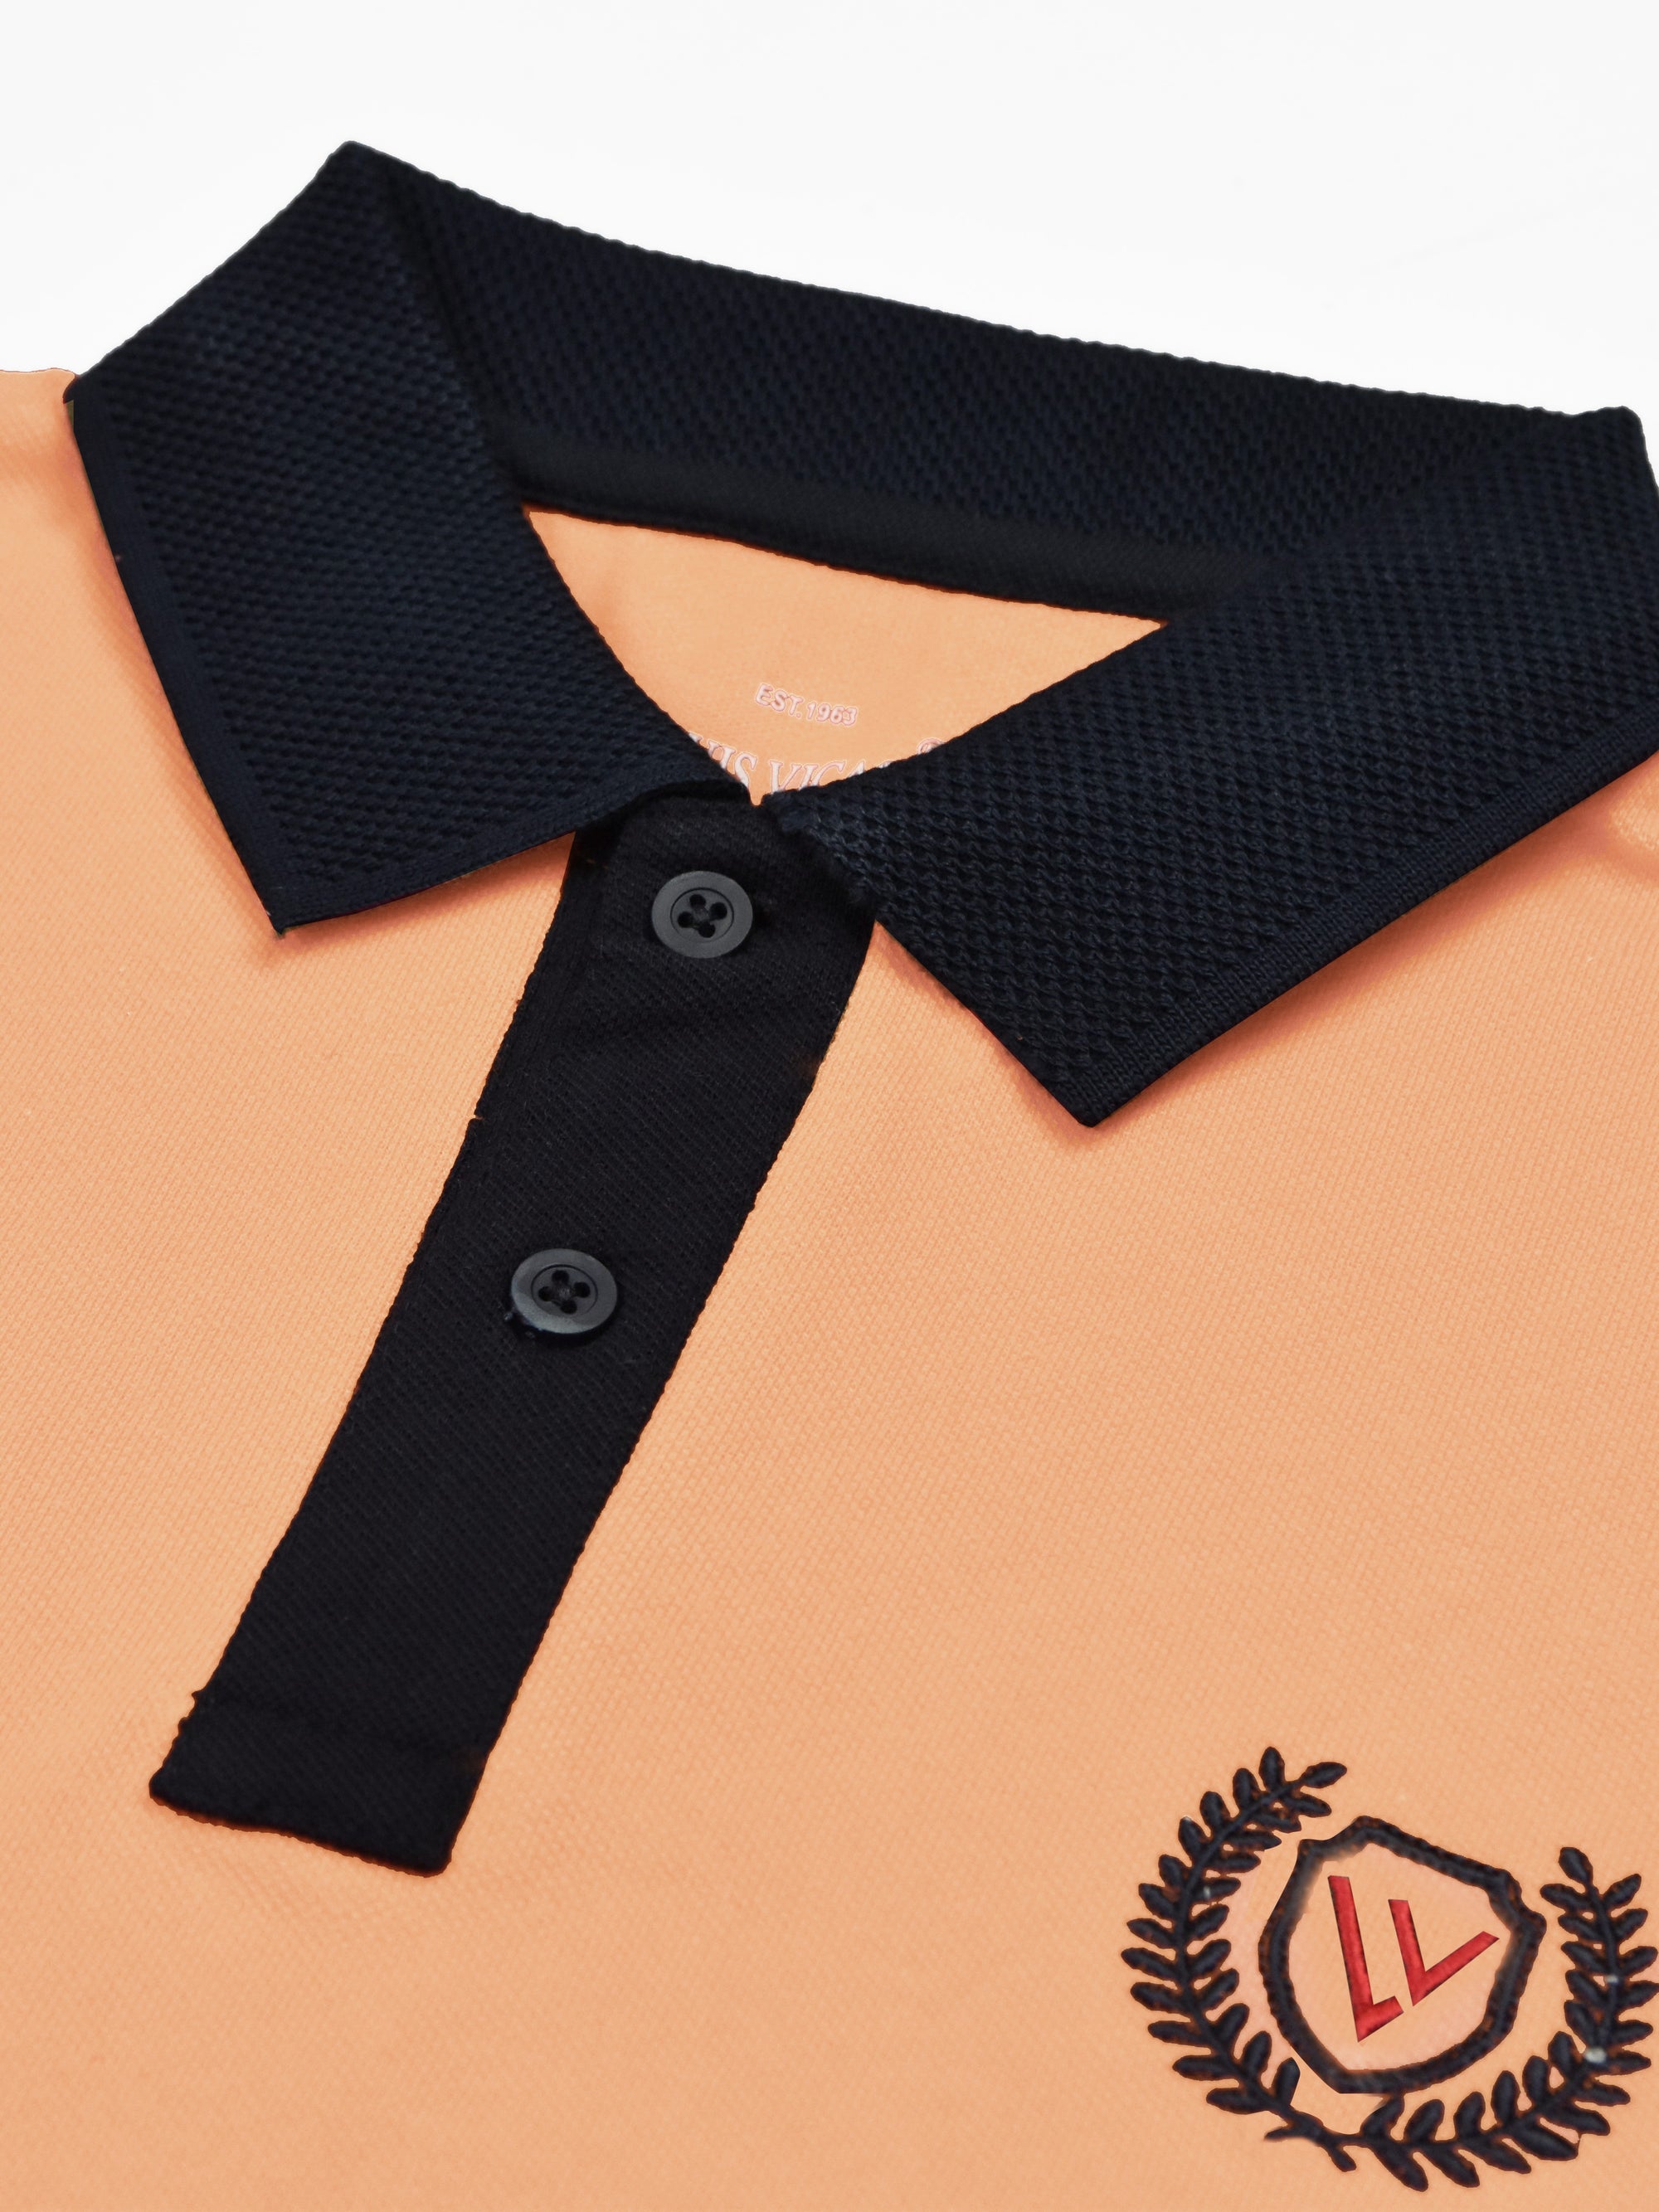 LV Summer Polo Shirt For Men-Light Salmon & Dark Navy-SP1570/RT2372